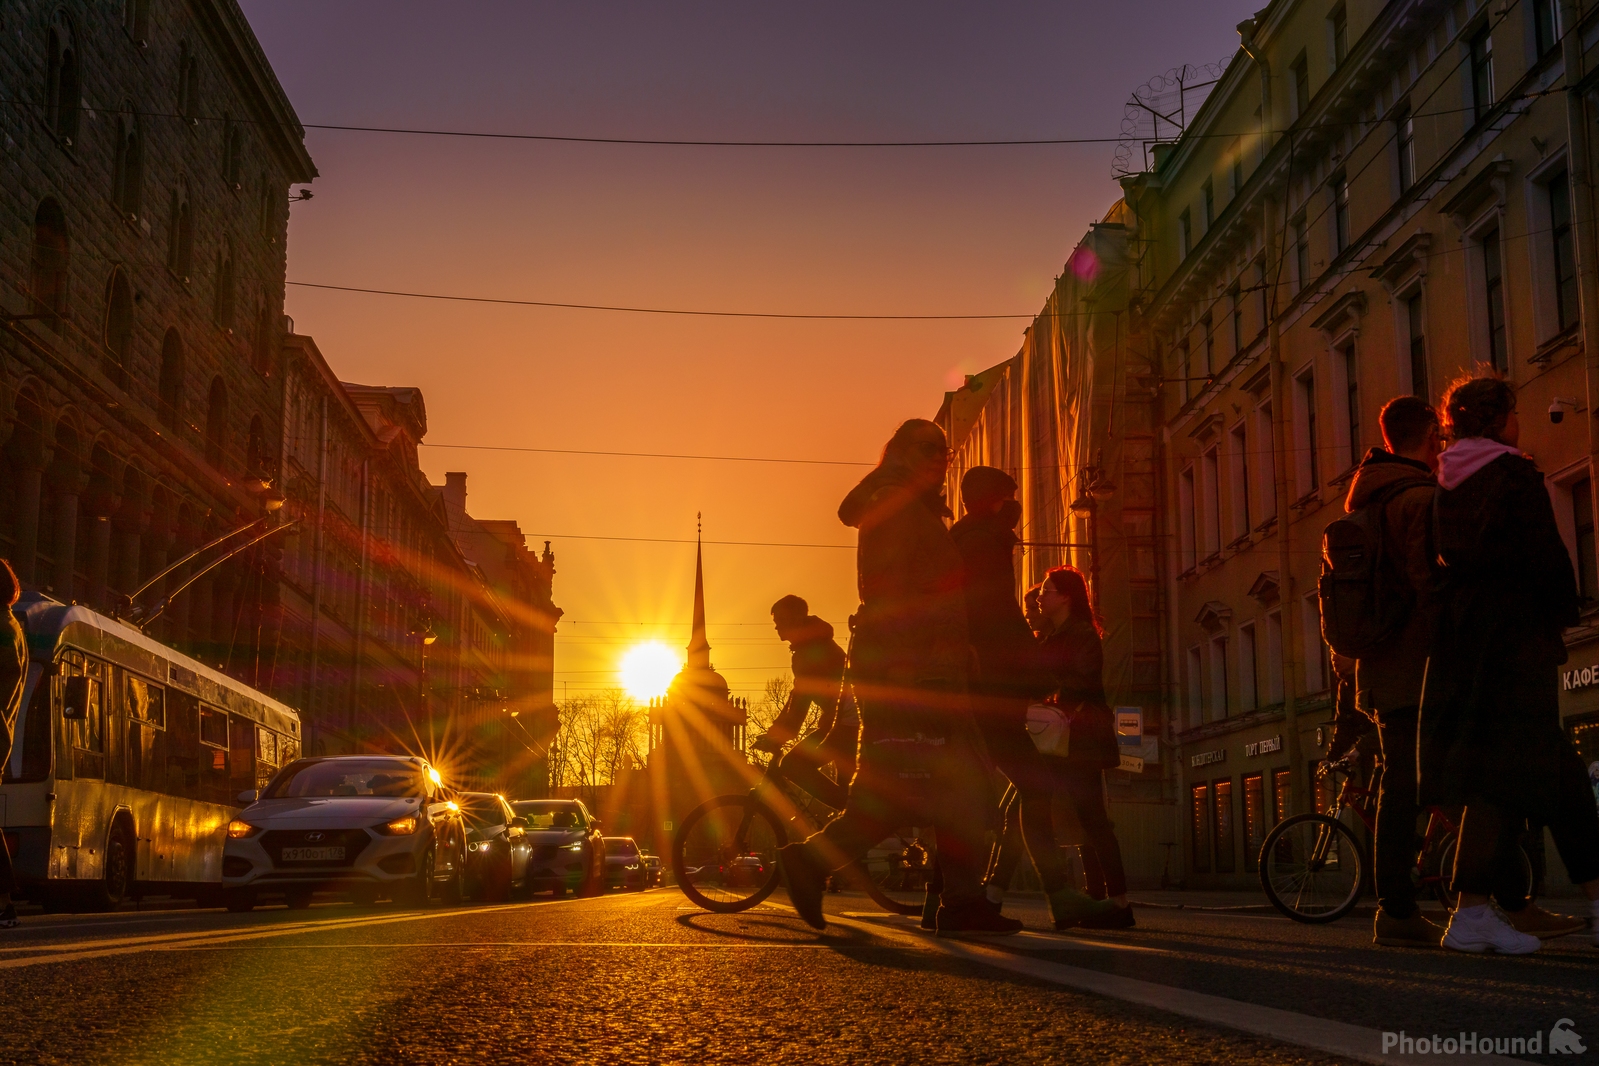 Image of Nevsky Ave - Admiralty View by Ilya Melnik